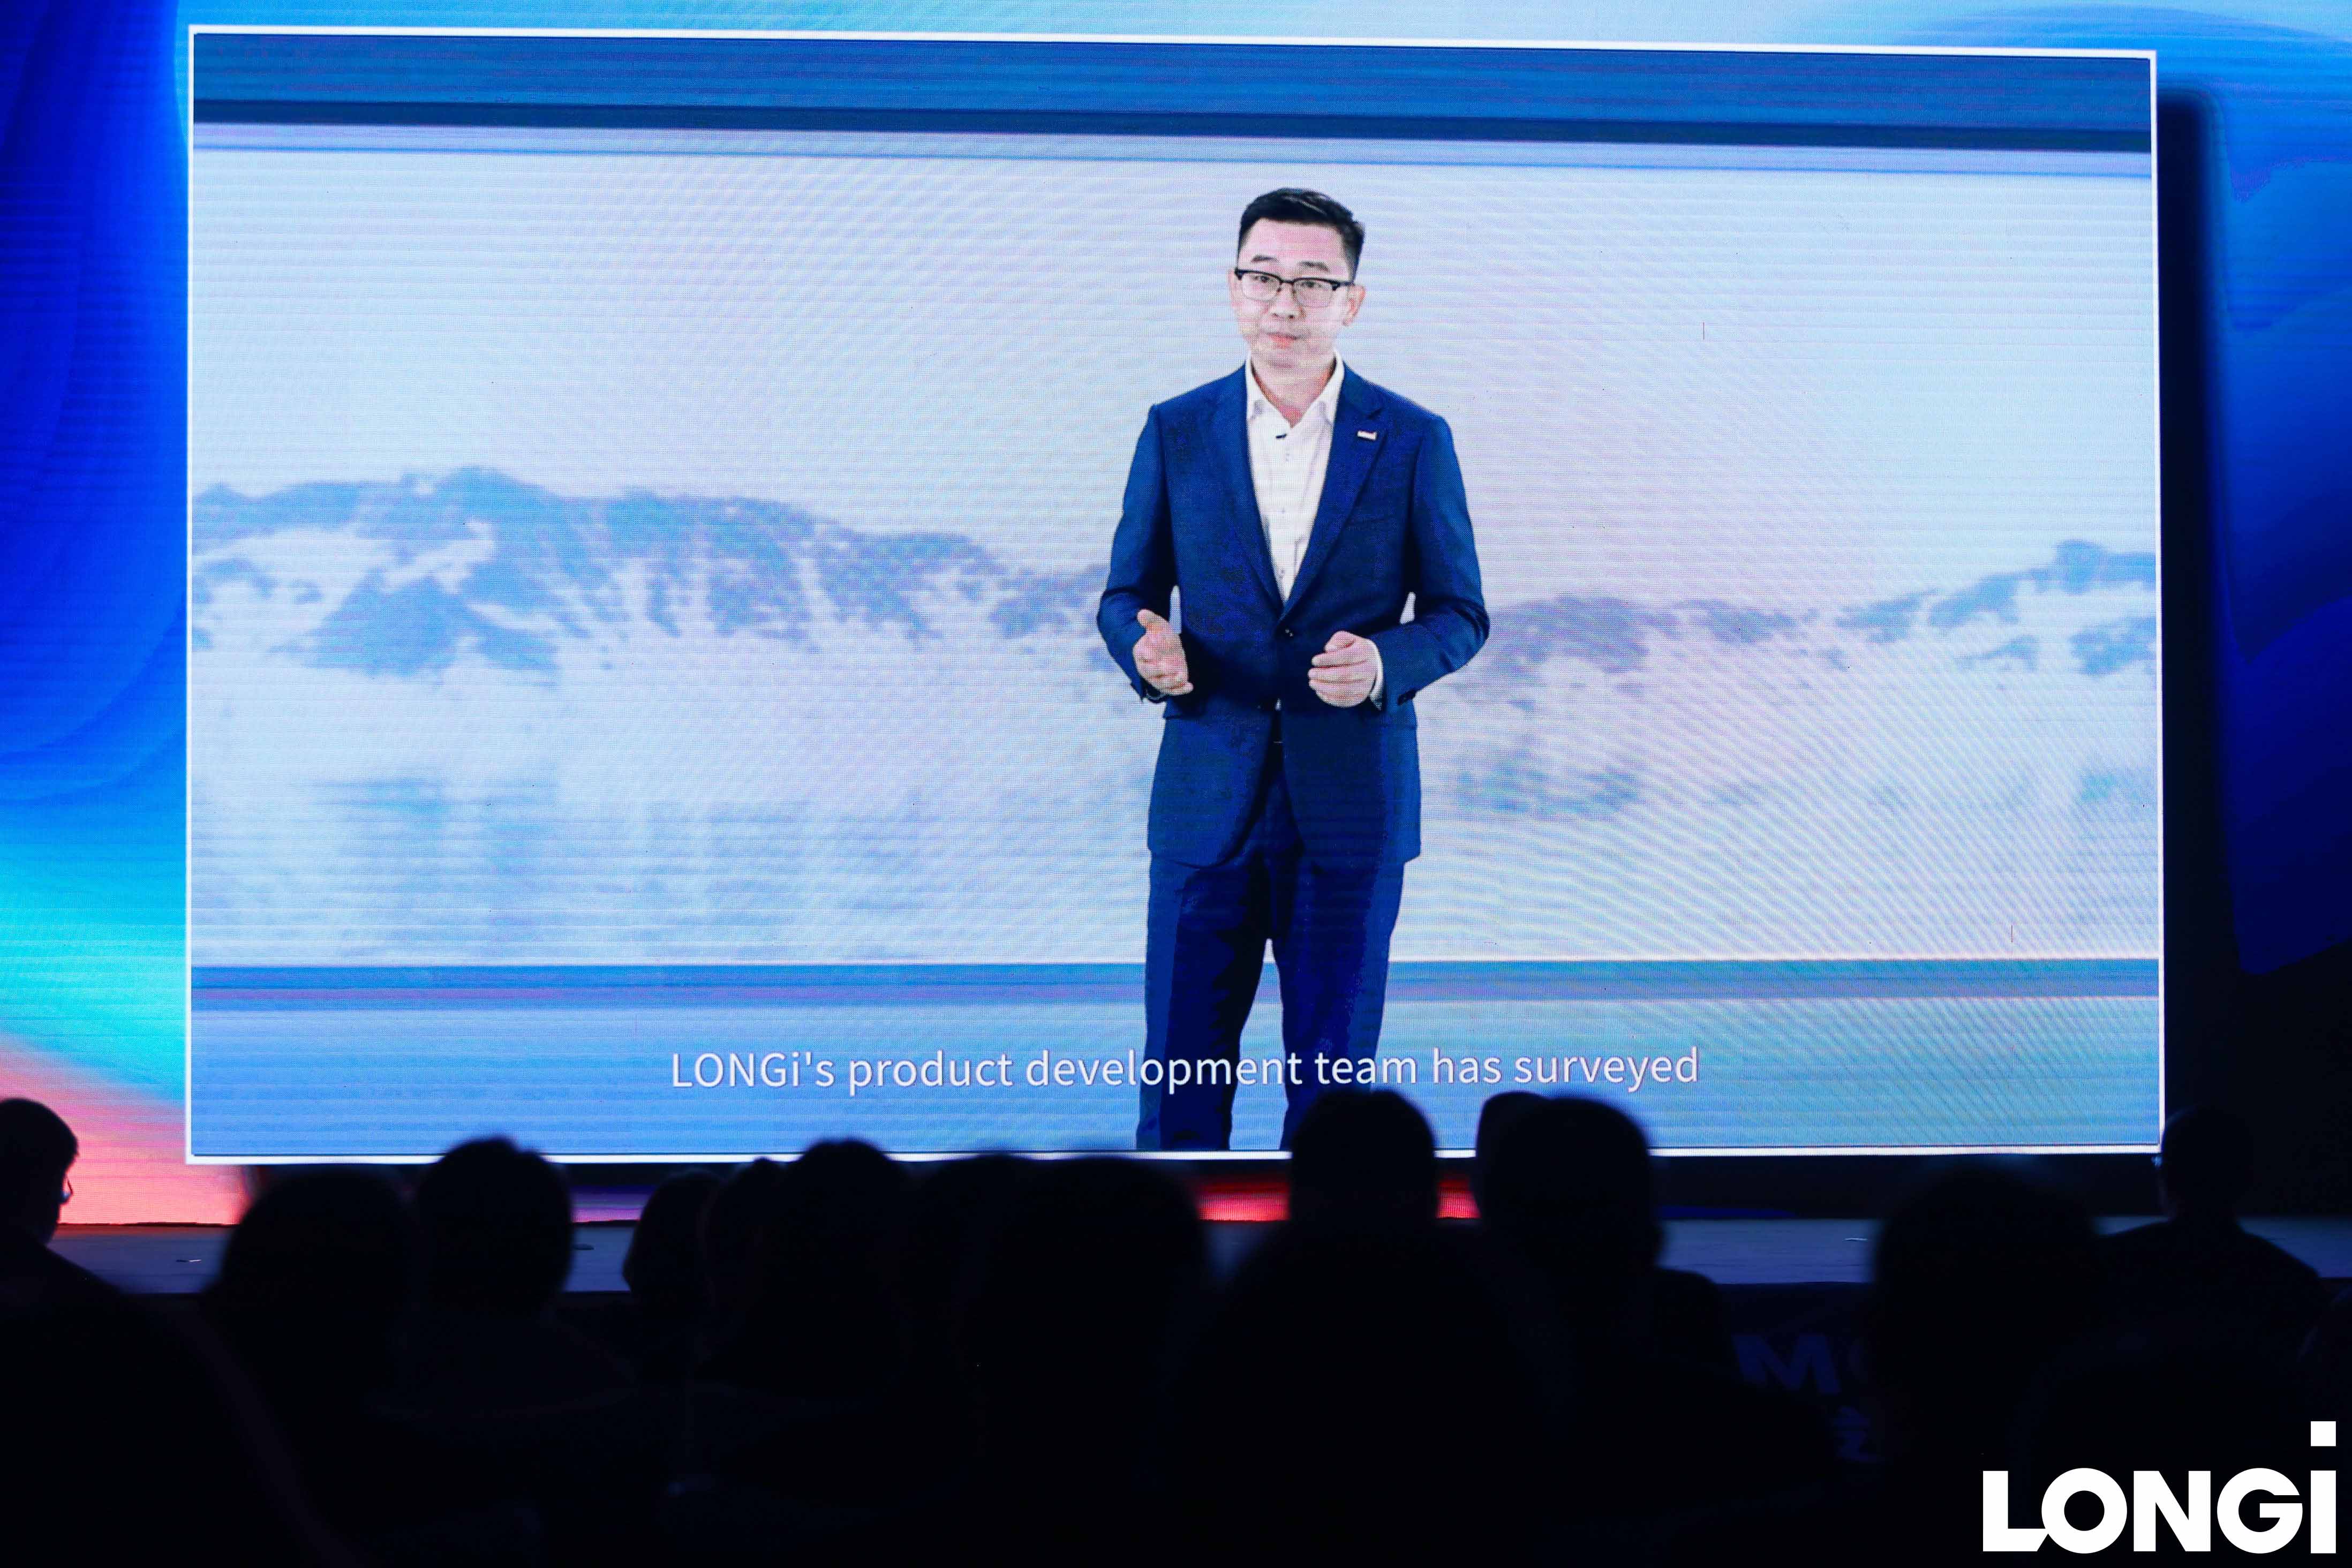 隆基绿能副总裁佘海峰发布全新一代超高价值组件新品Hi-MO 6